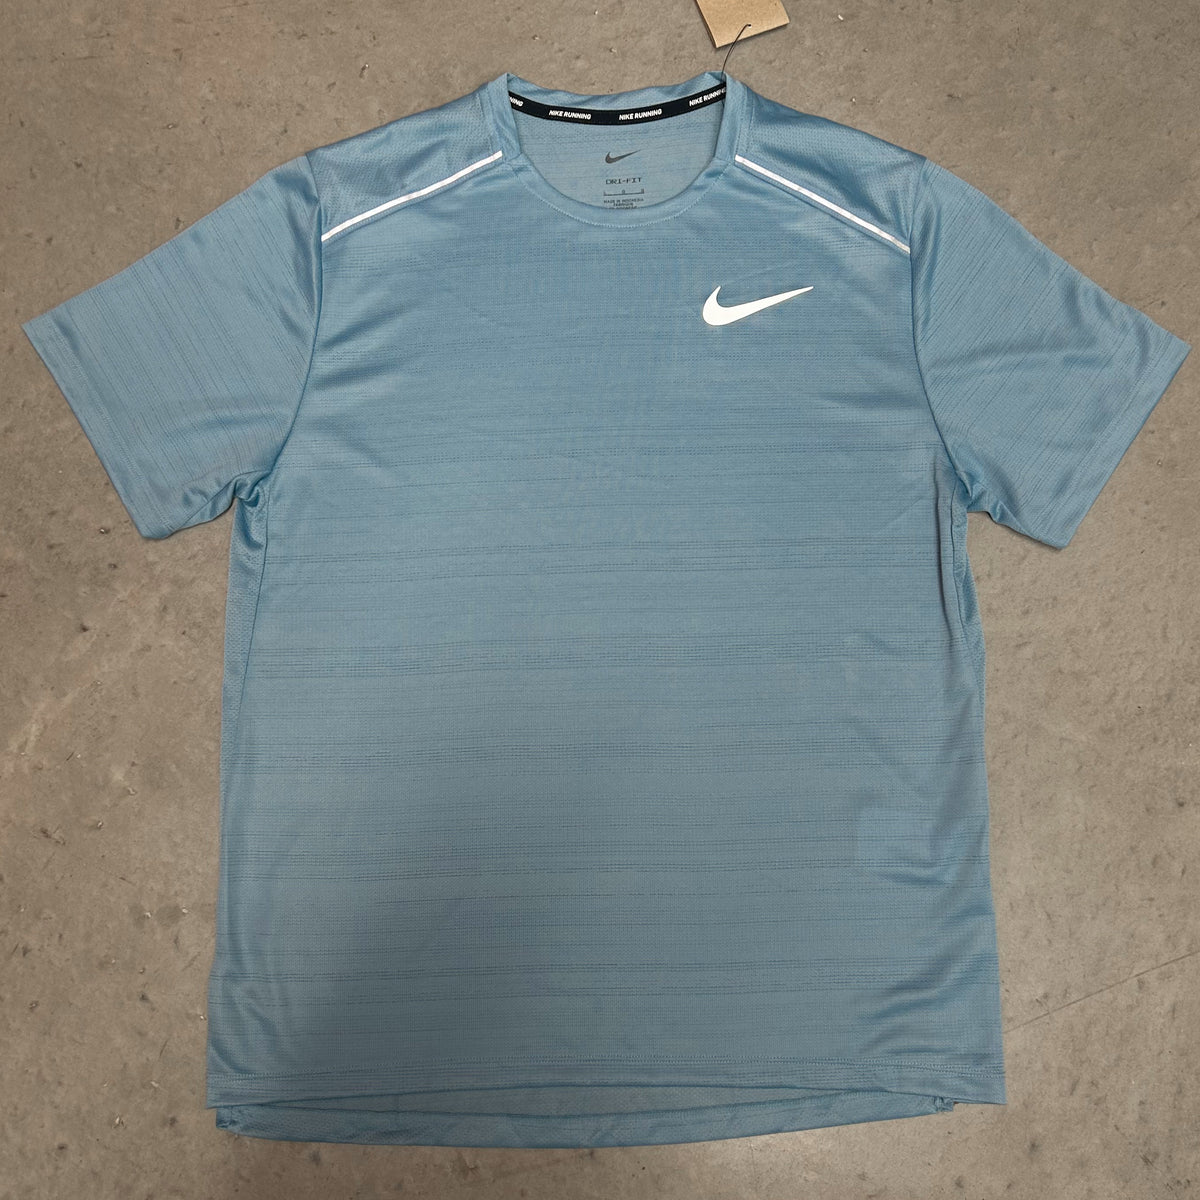 Nike Miler 1.0 Worn Blue